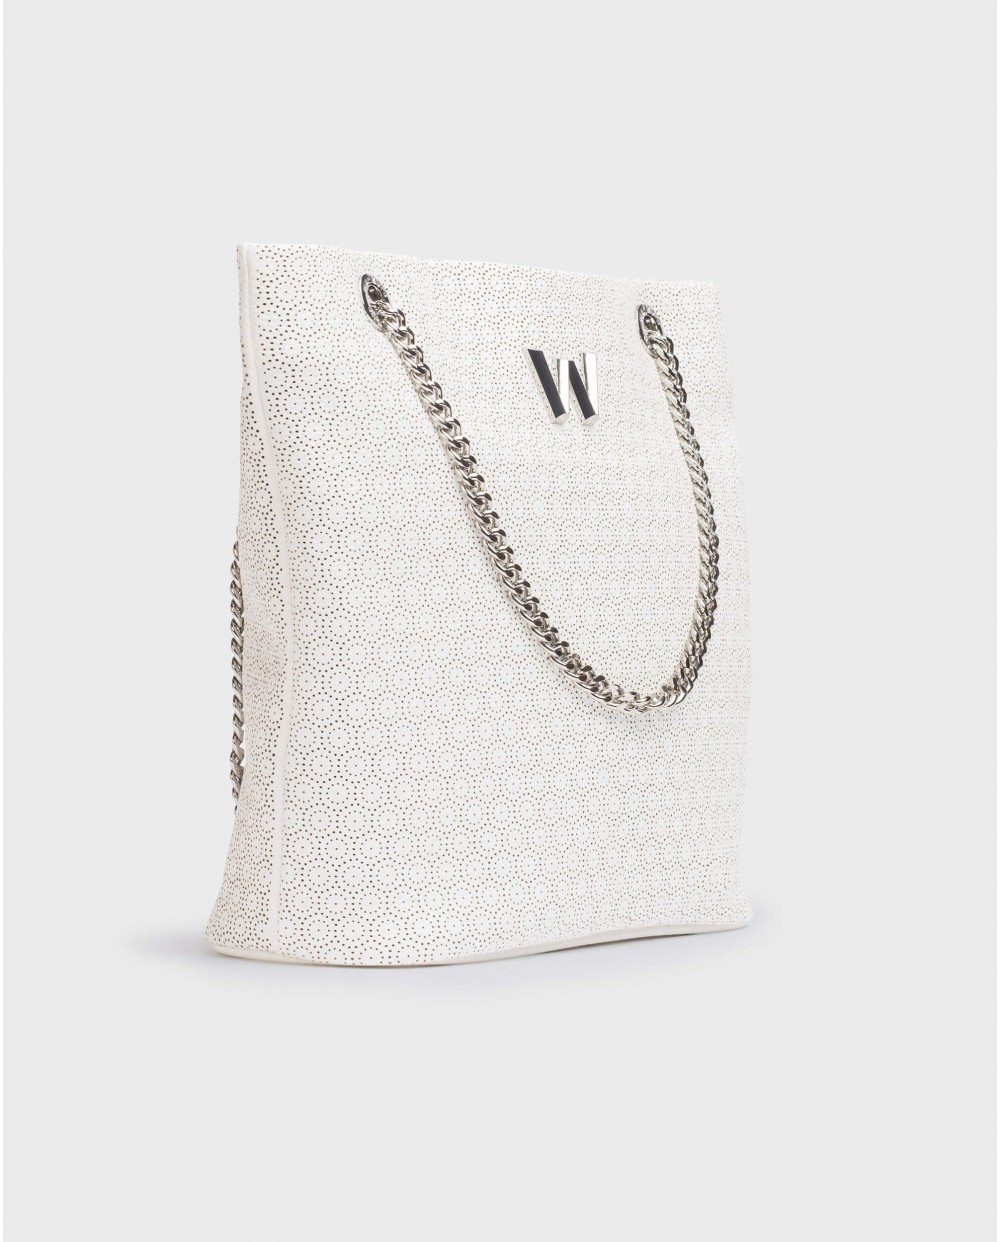 Lily Shopper Bag